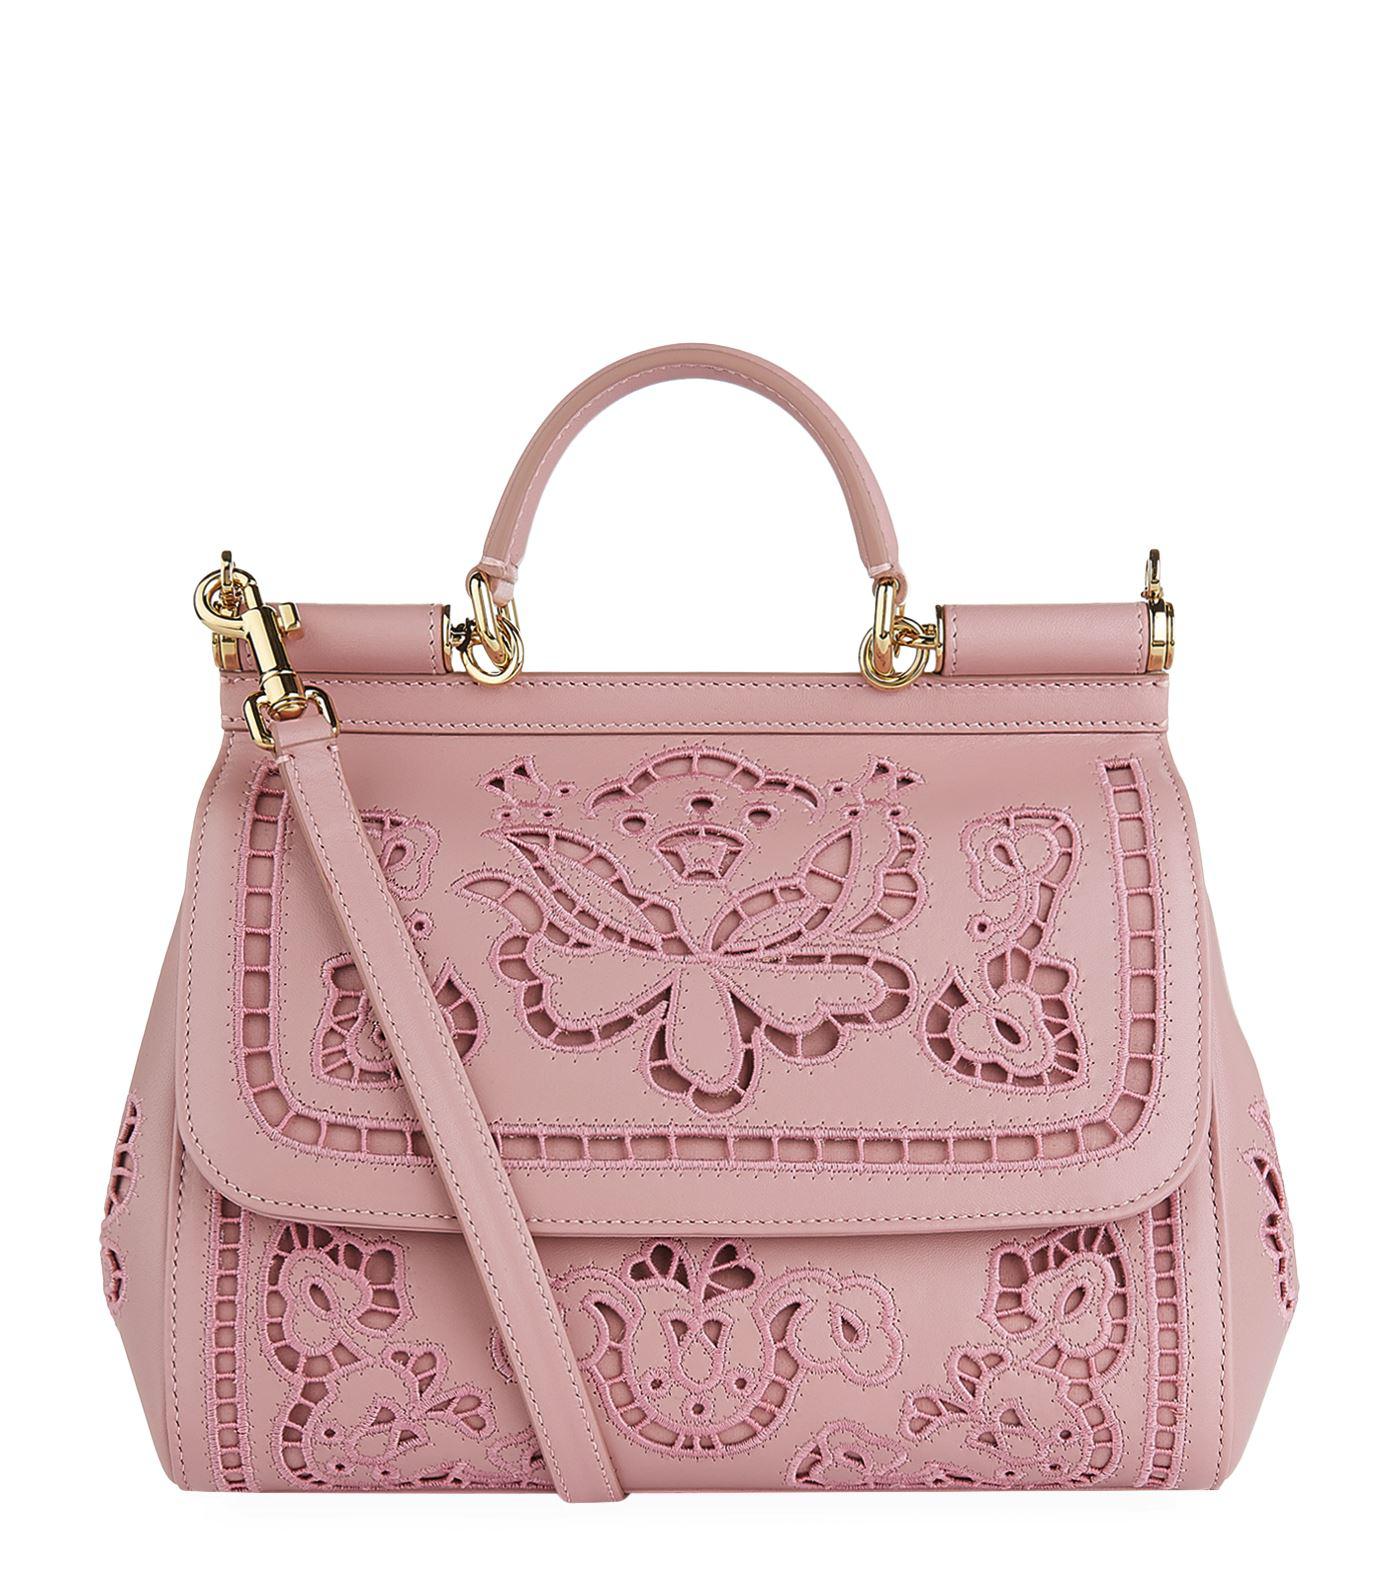 Lyst - Dolce & Gabbana Medium Sicily Lace Shoulder Bag in Pink